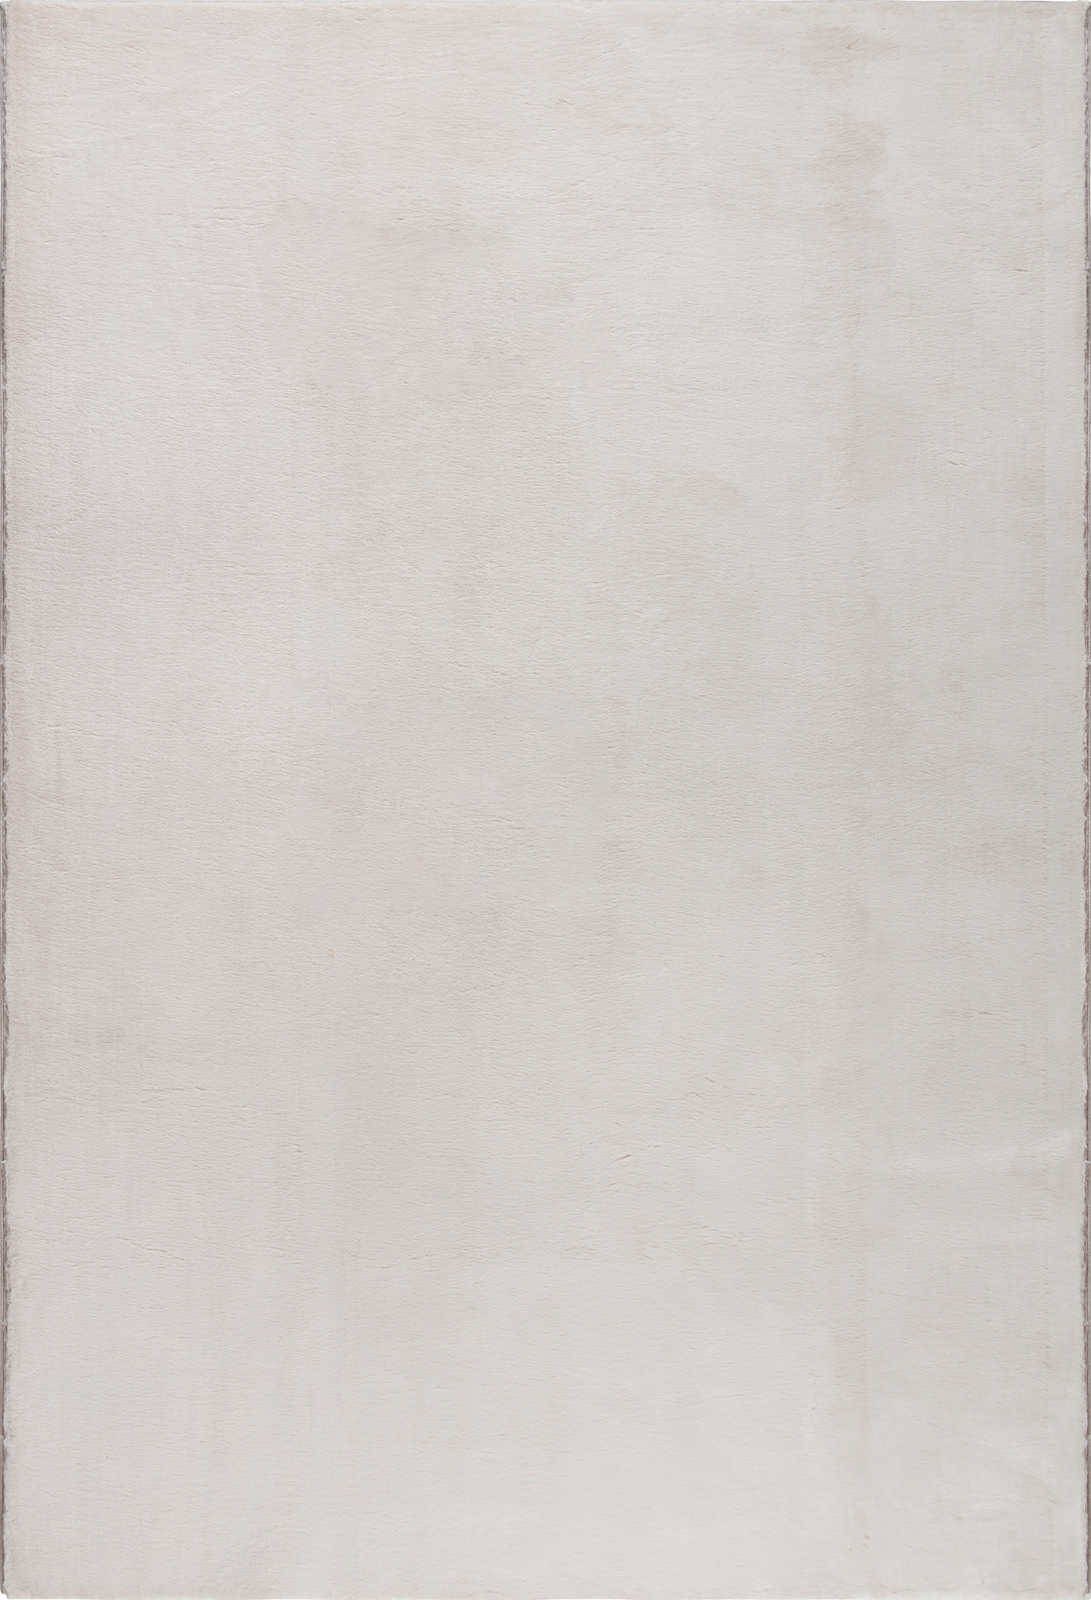             Kuschelweicher Hochflor Teppich in leichtem Beige – 150 x 80 cm
        